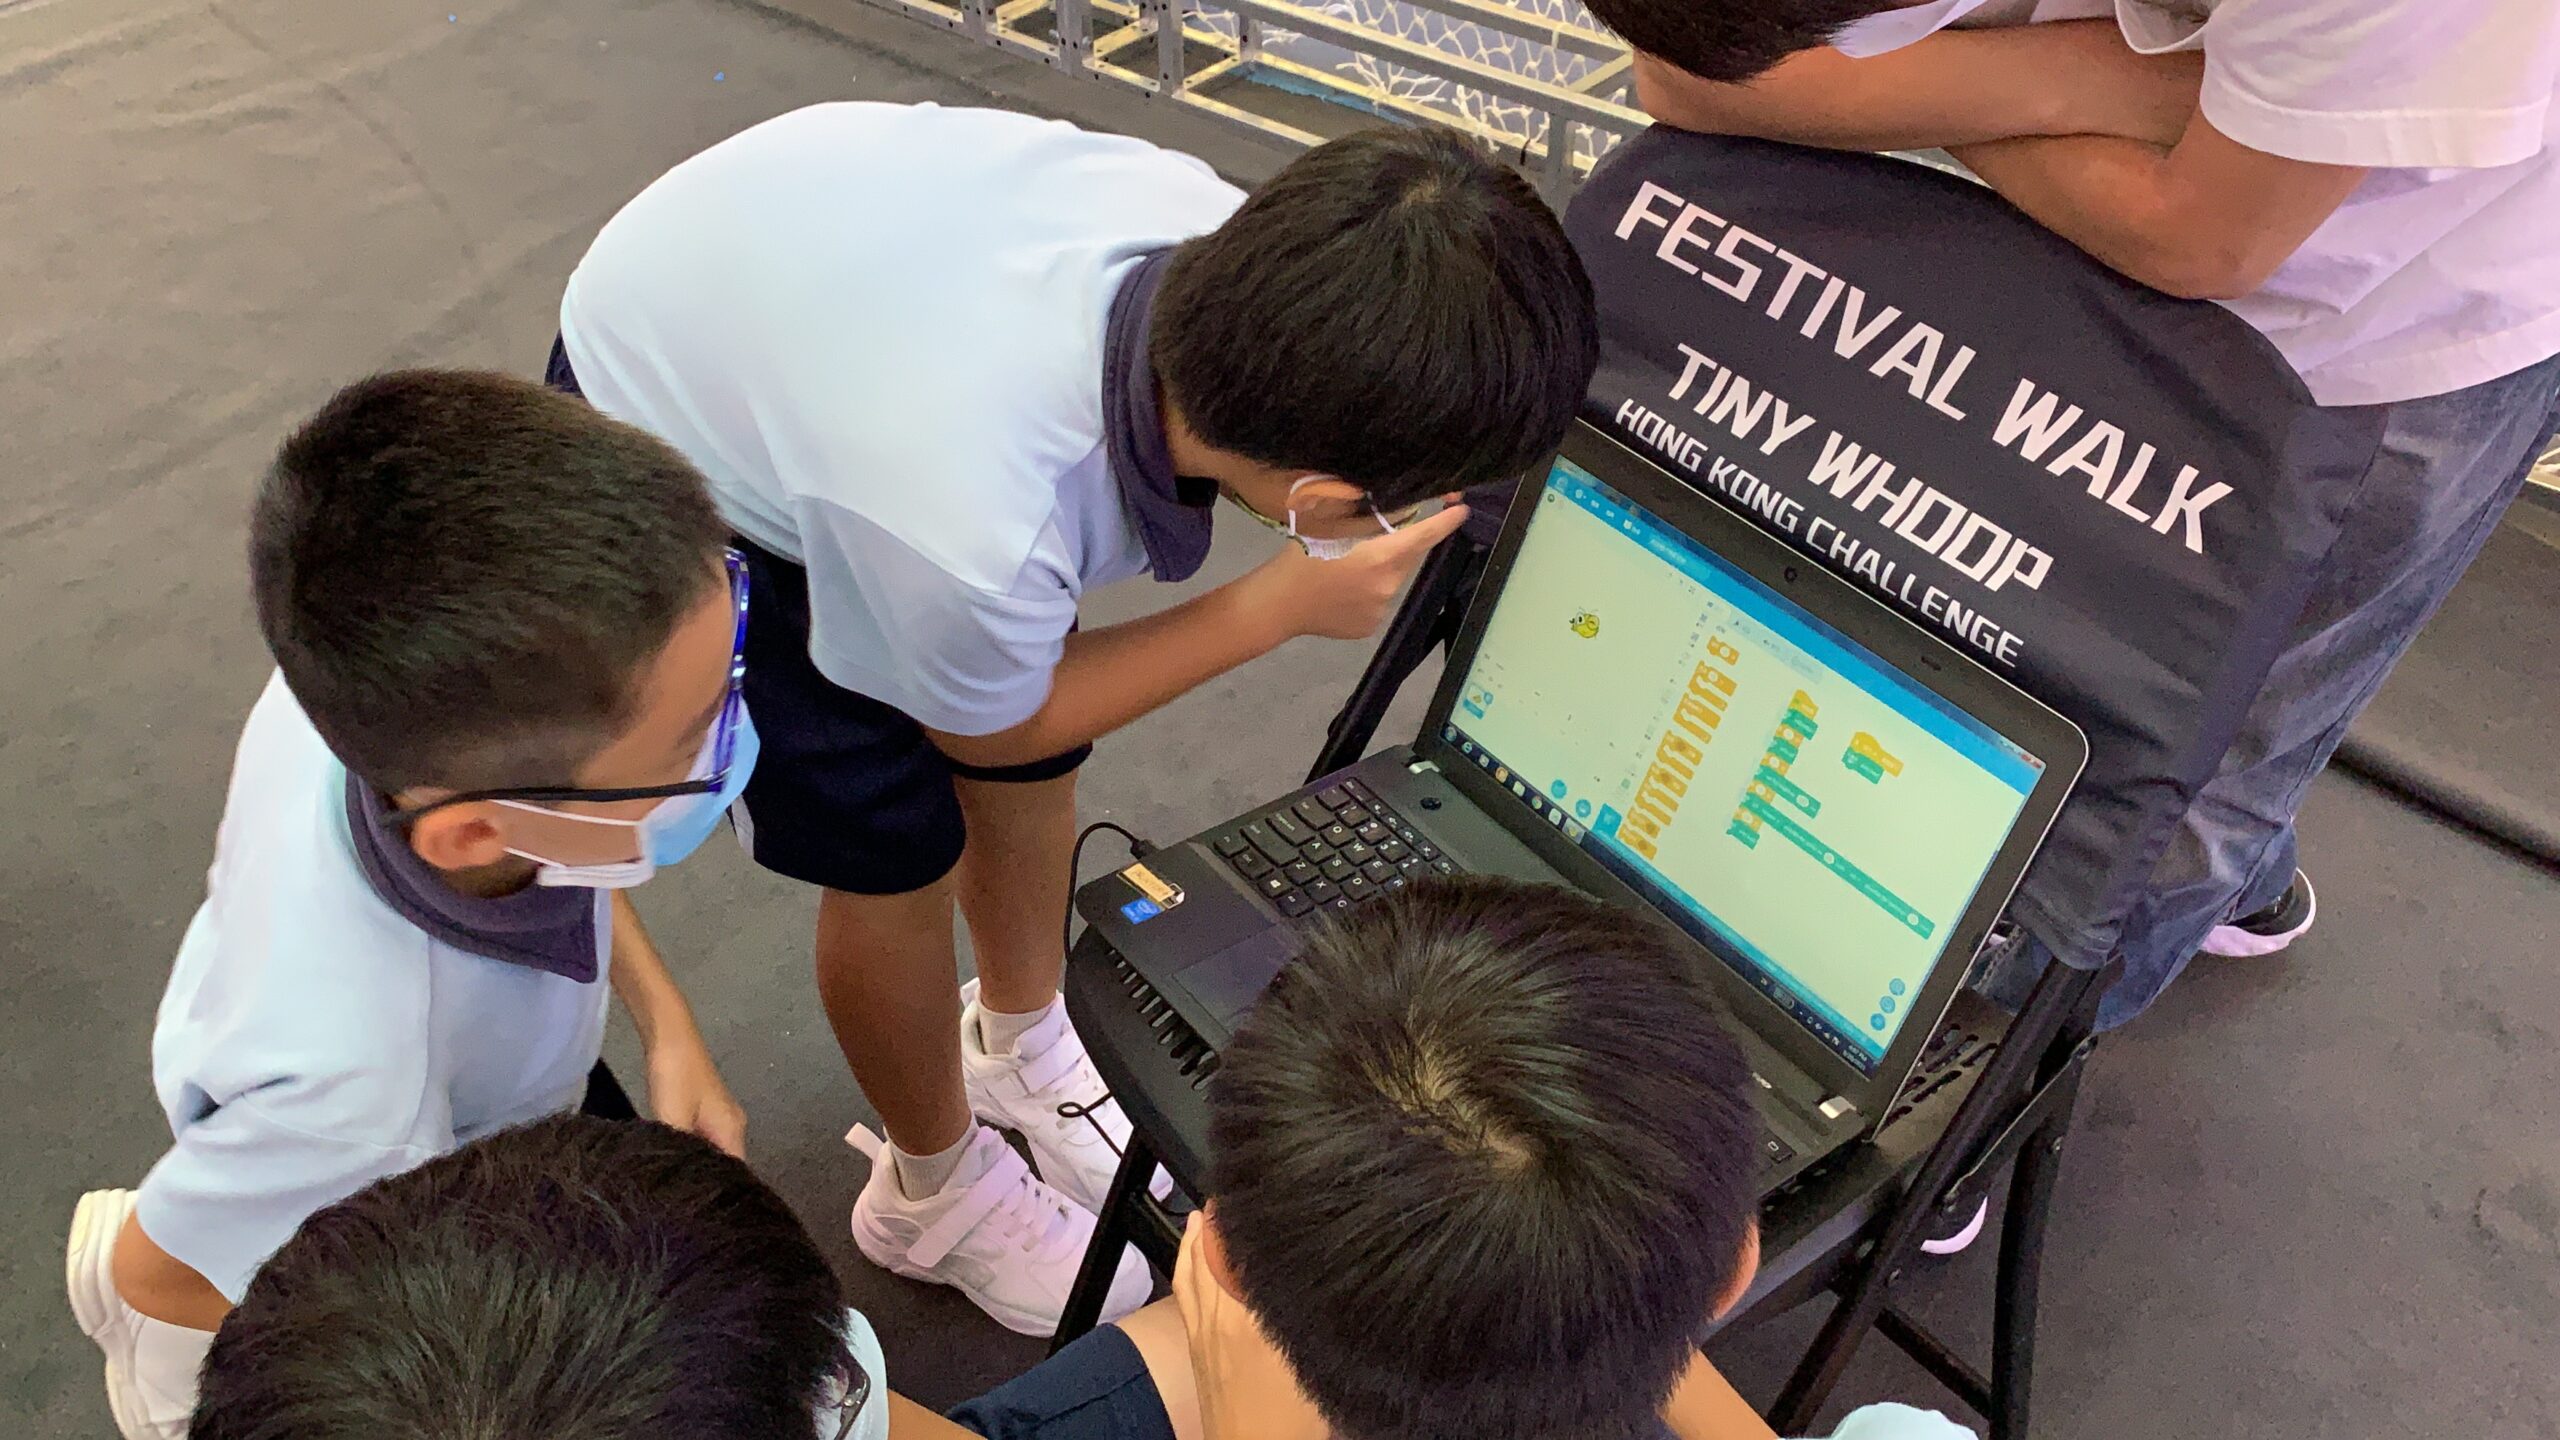 又一城迷你競速無人機香港挑戰賽2021